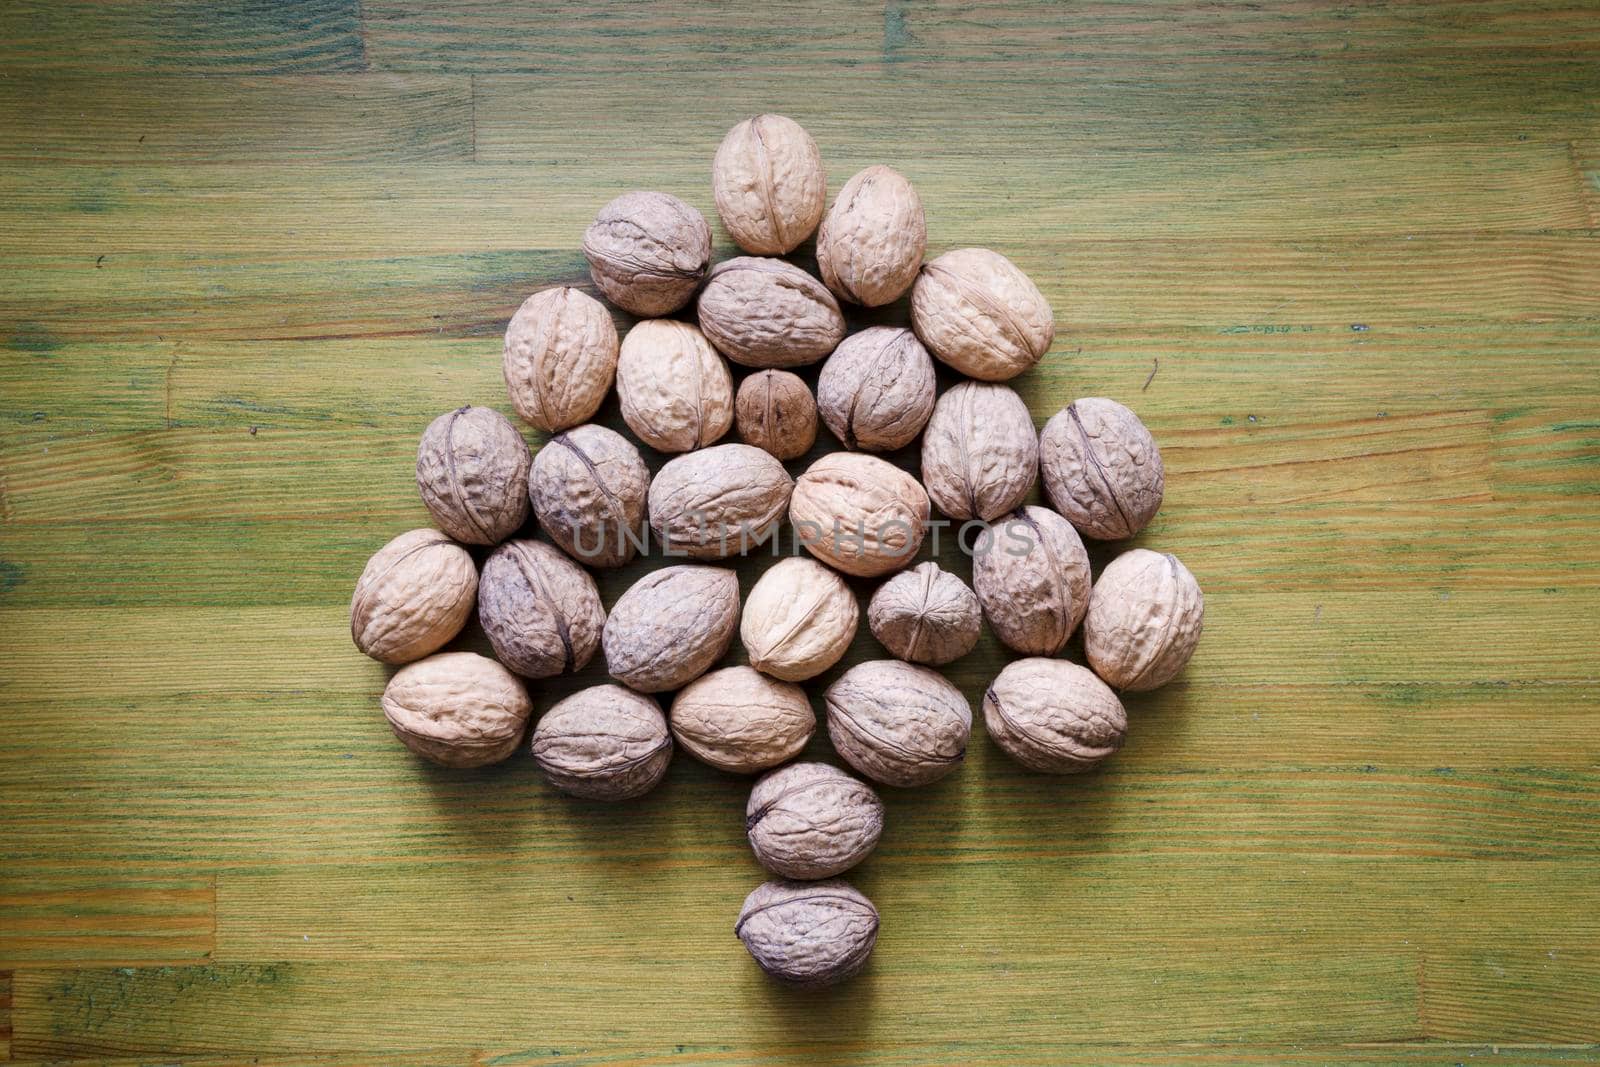 walnut tree by yuriz